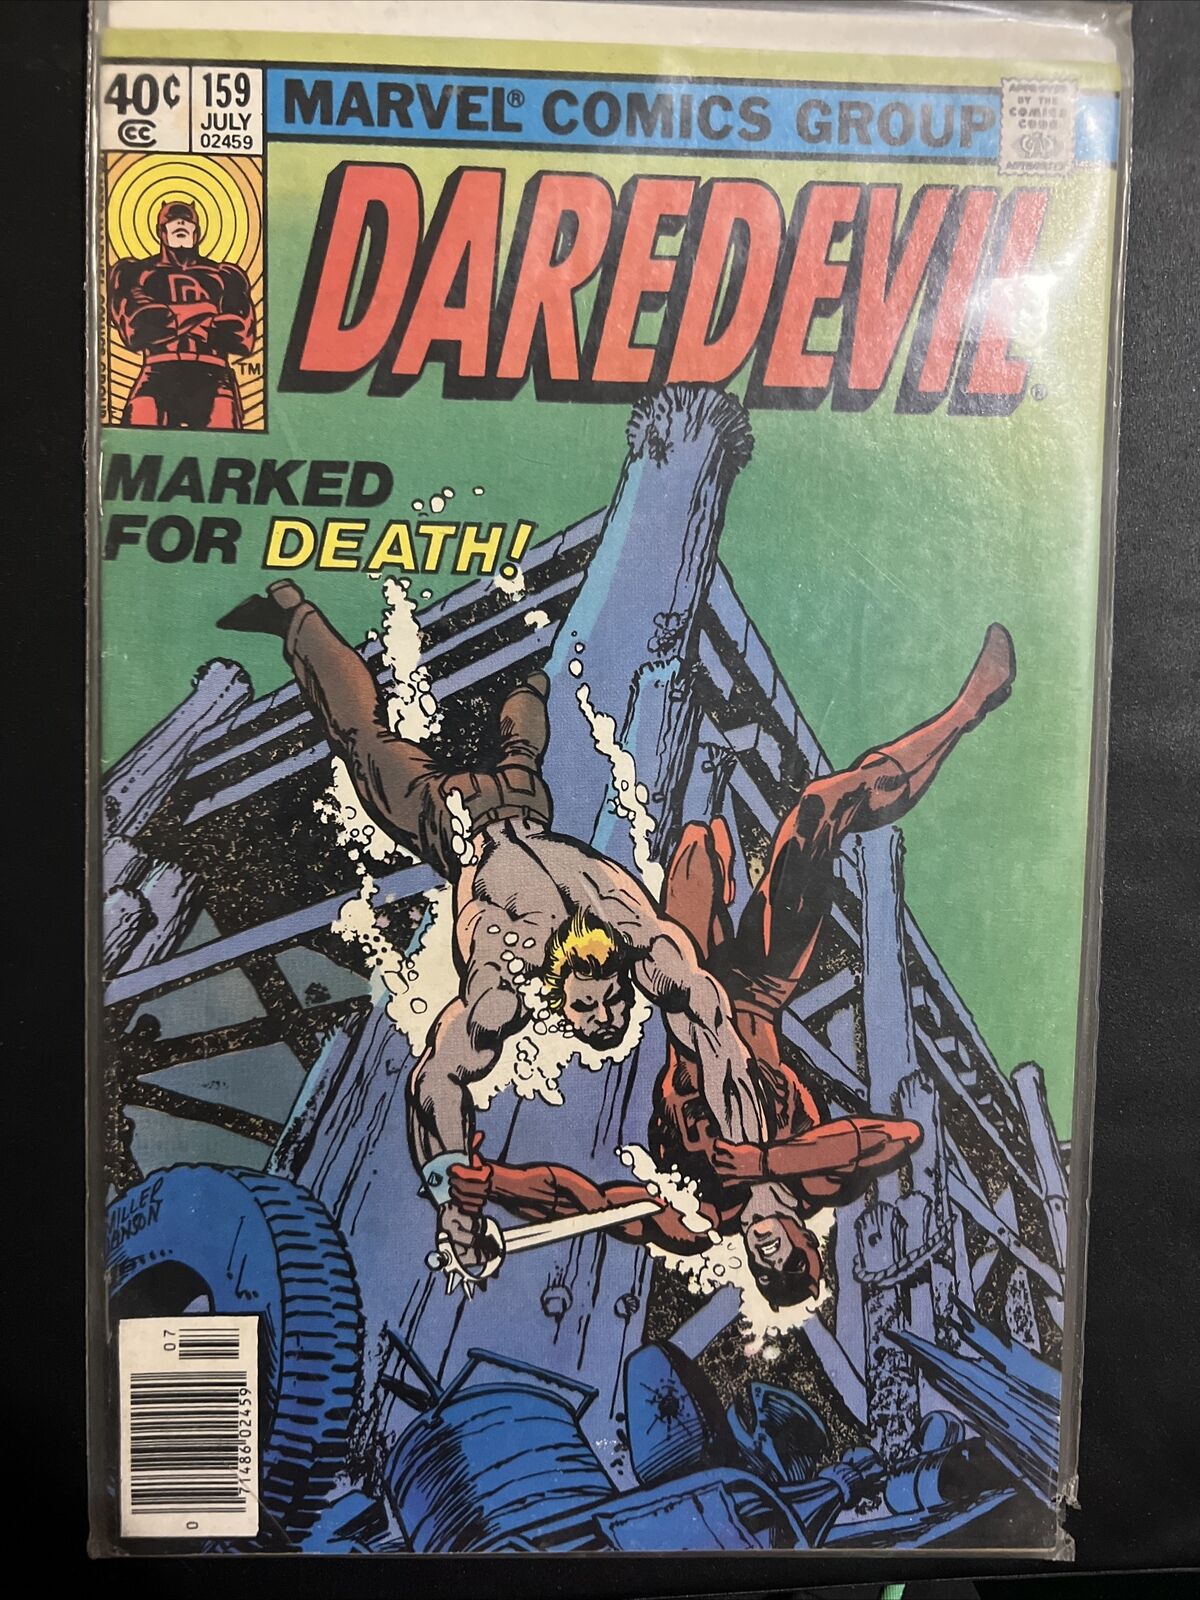 DAREDEVIL #159 1979 MARVEL KEY CLASSIC BULLSEYE COVER by FRANK MILLER NM